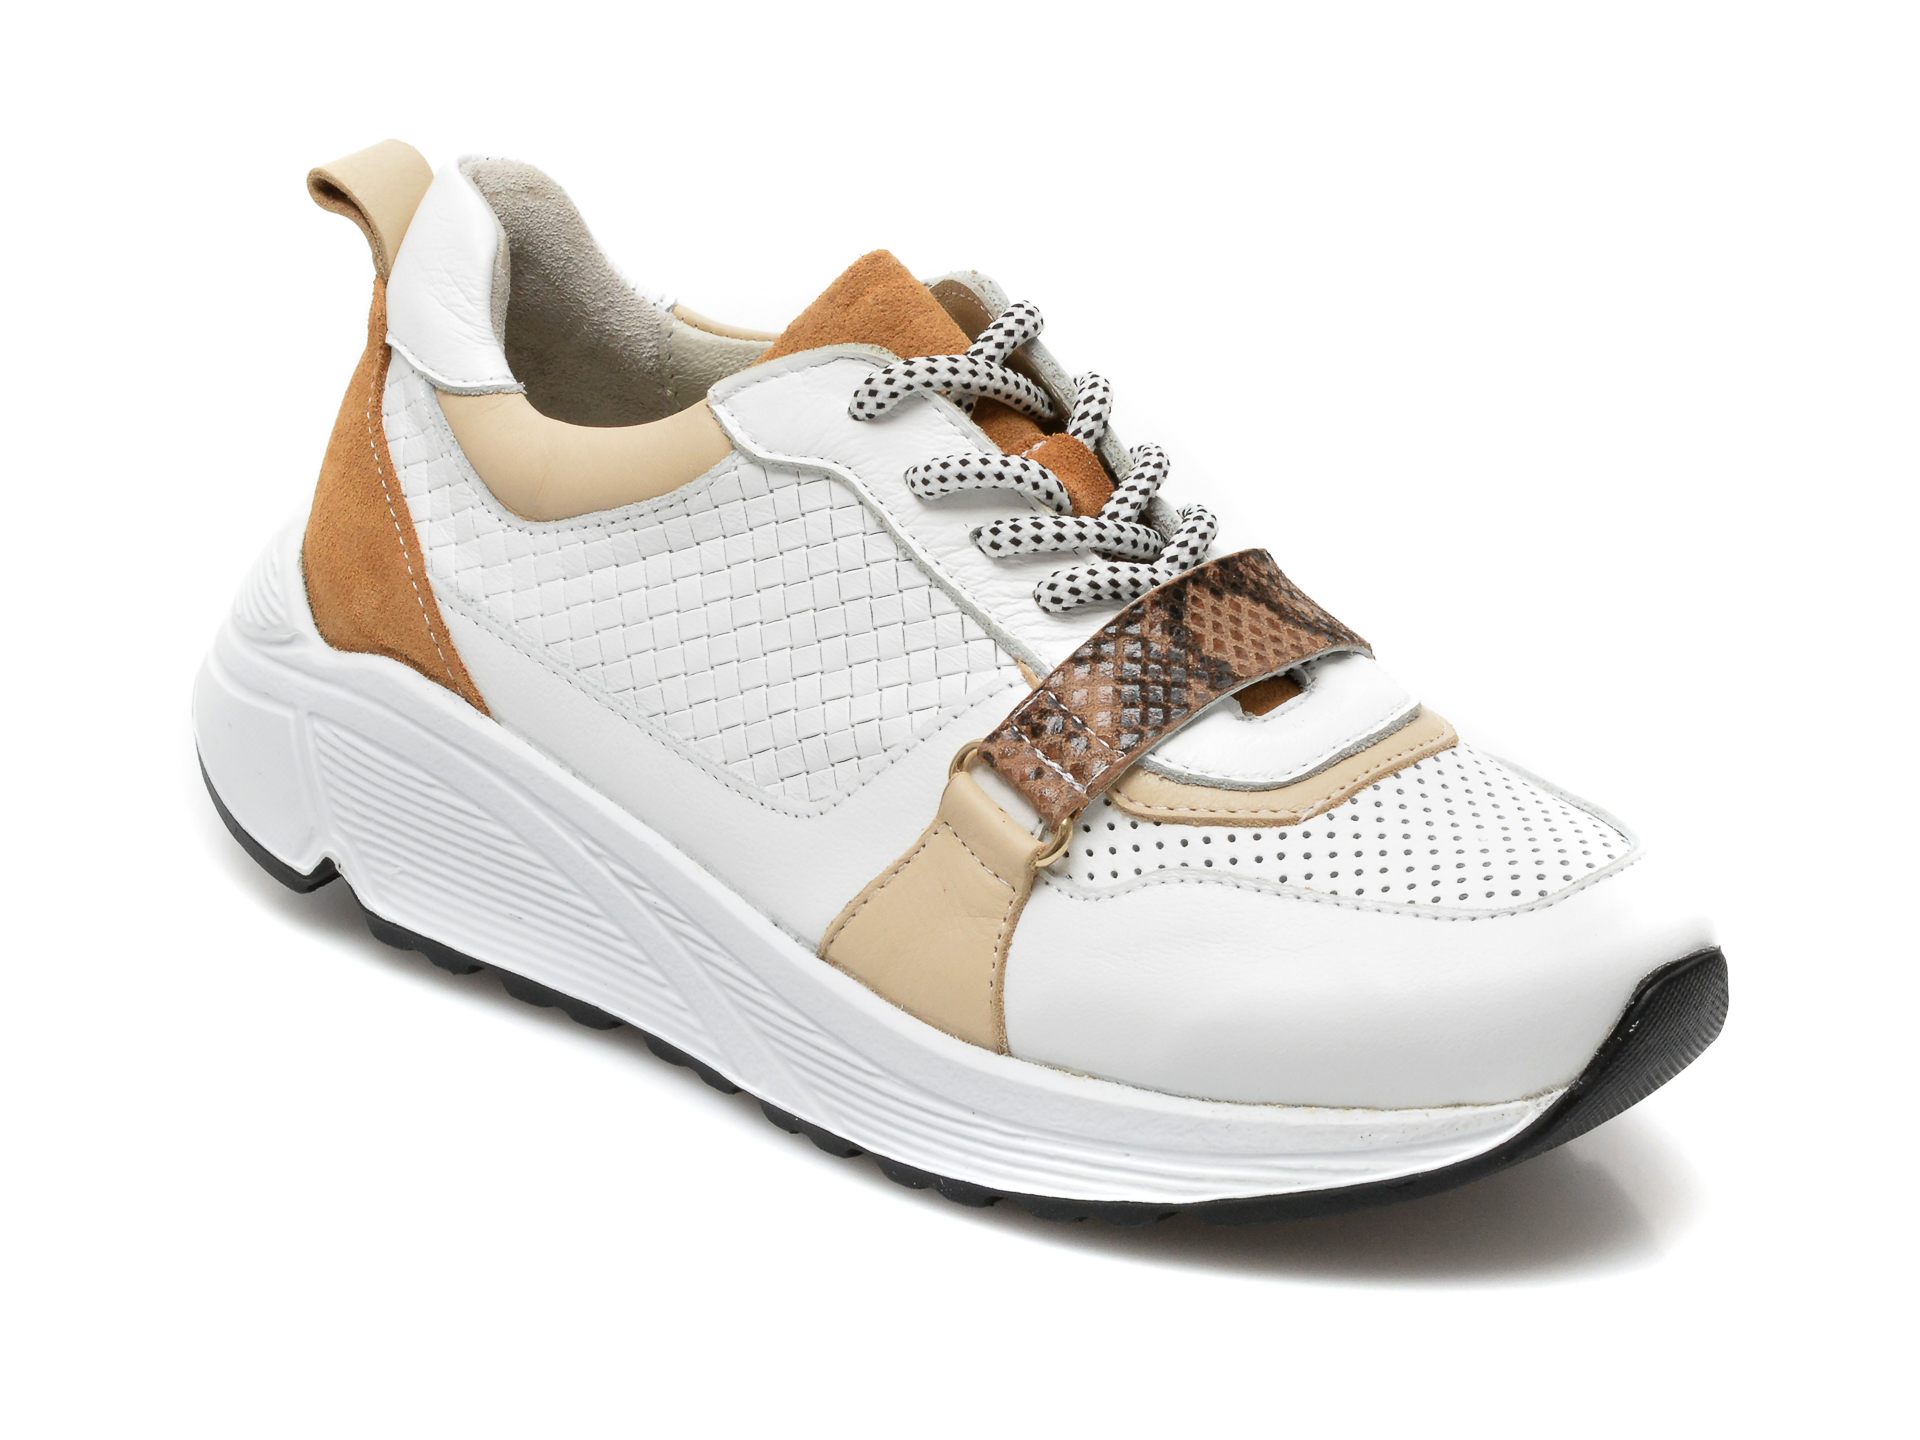 Pantofi sport EPICA albi, 2301, din piele naturala Epica imagine noua